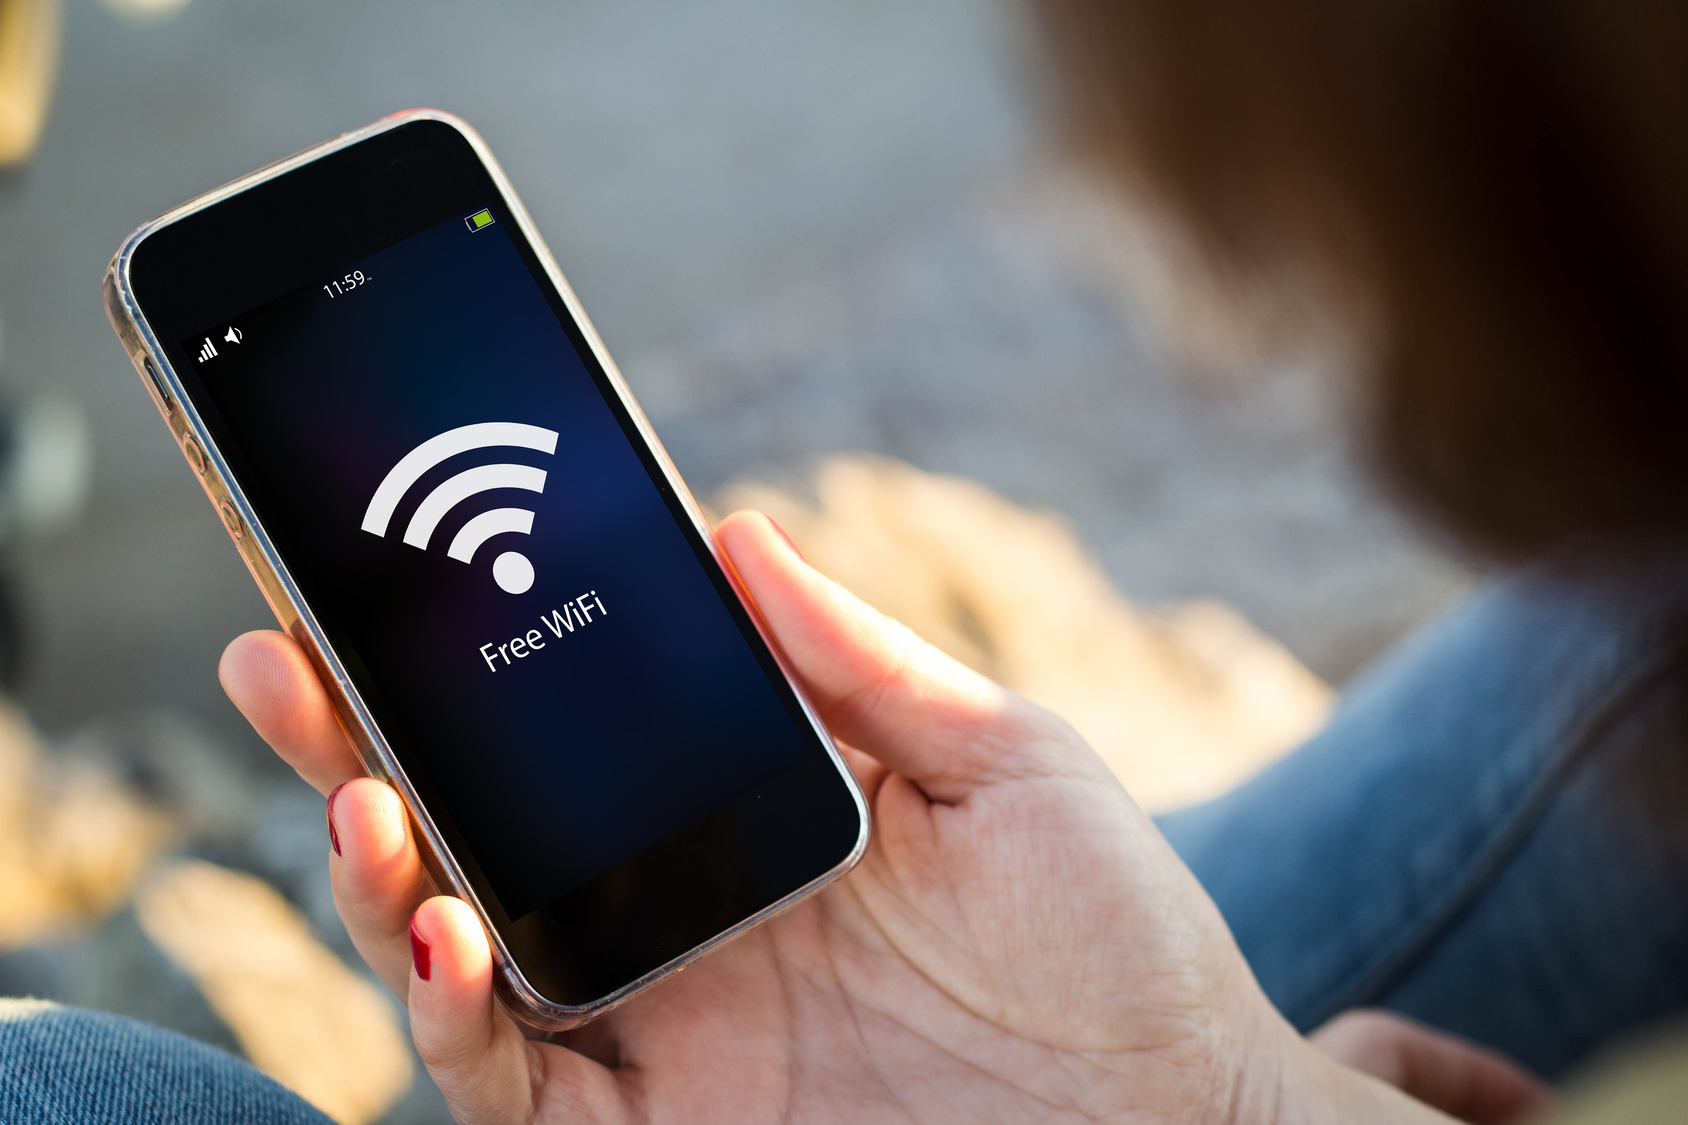 Ofrecemos a nuestros clientes un servicio de conexión WiFi gratuito y de alta velocidad, para que se sientan como en casa.